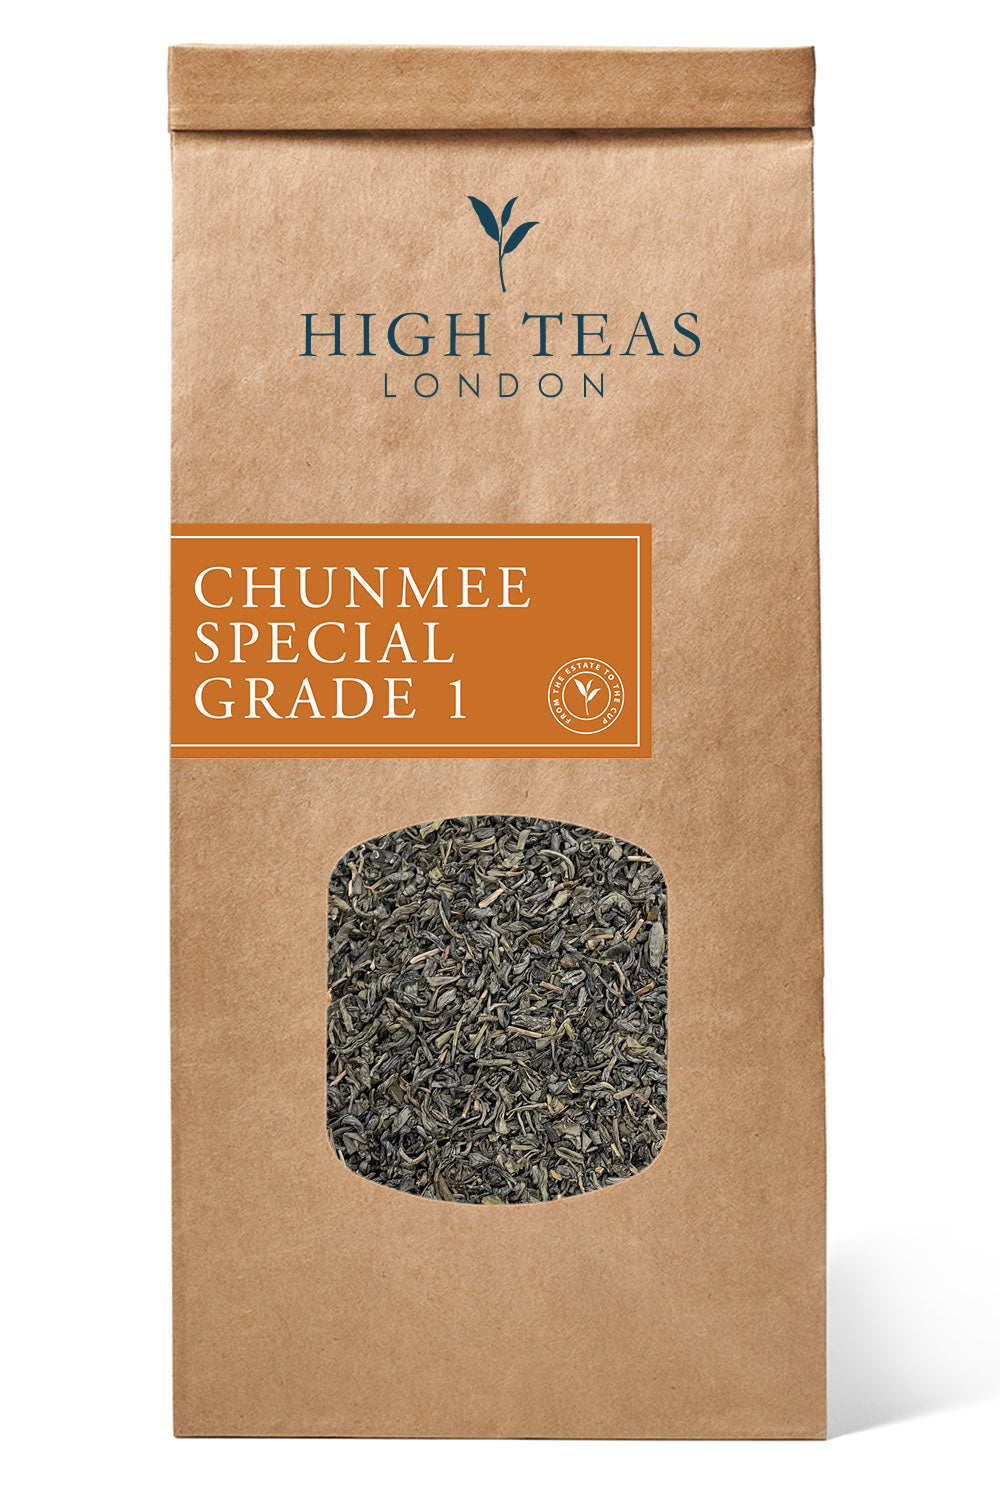 Chunmee Special Grade 1-250g-Loose Leaf Tea-High Teas